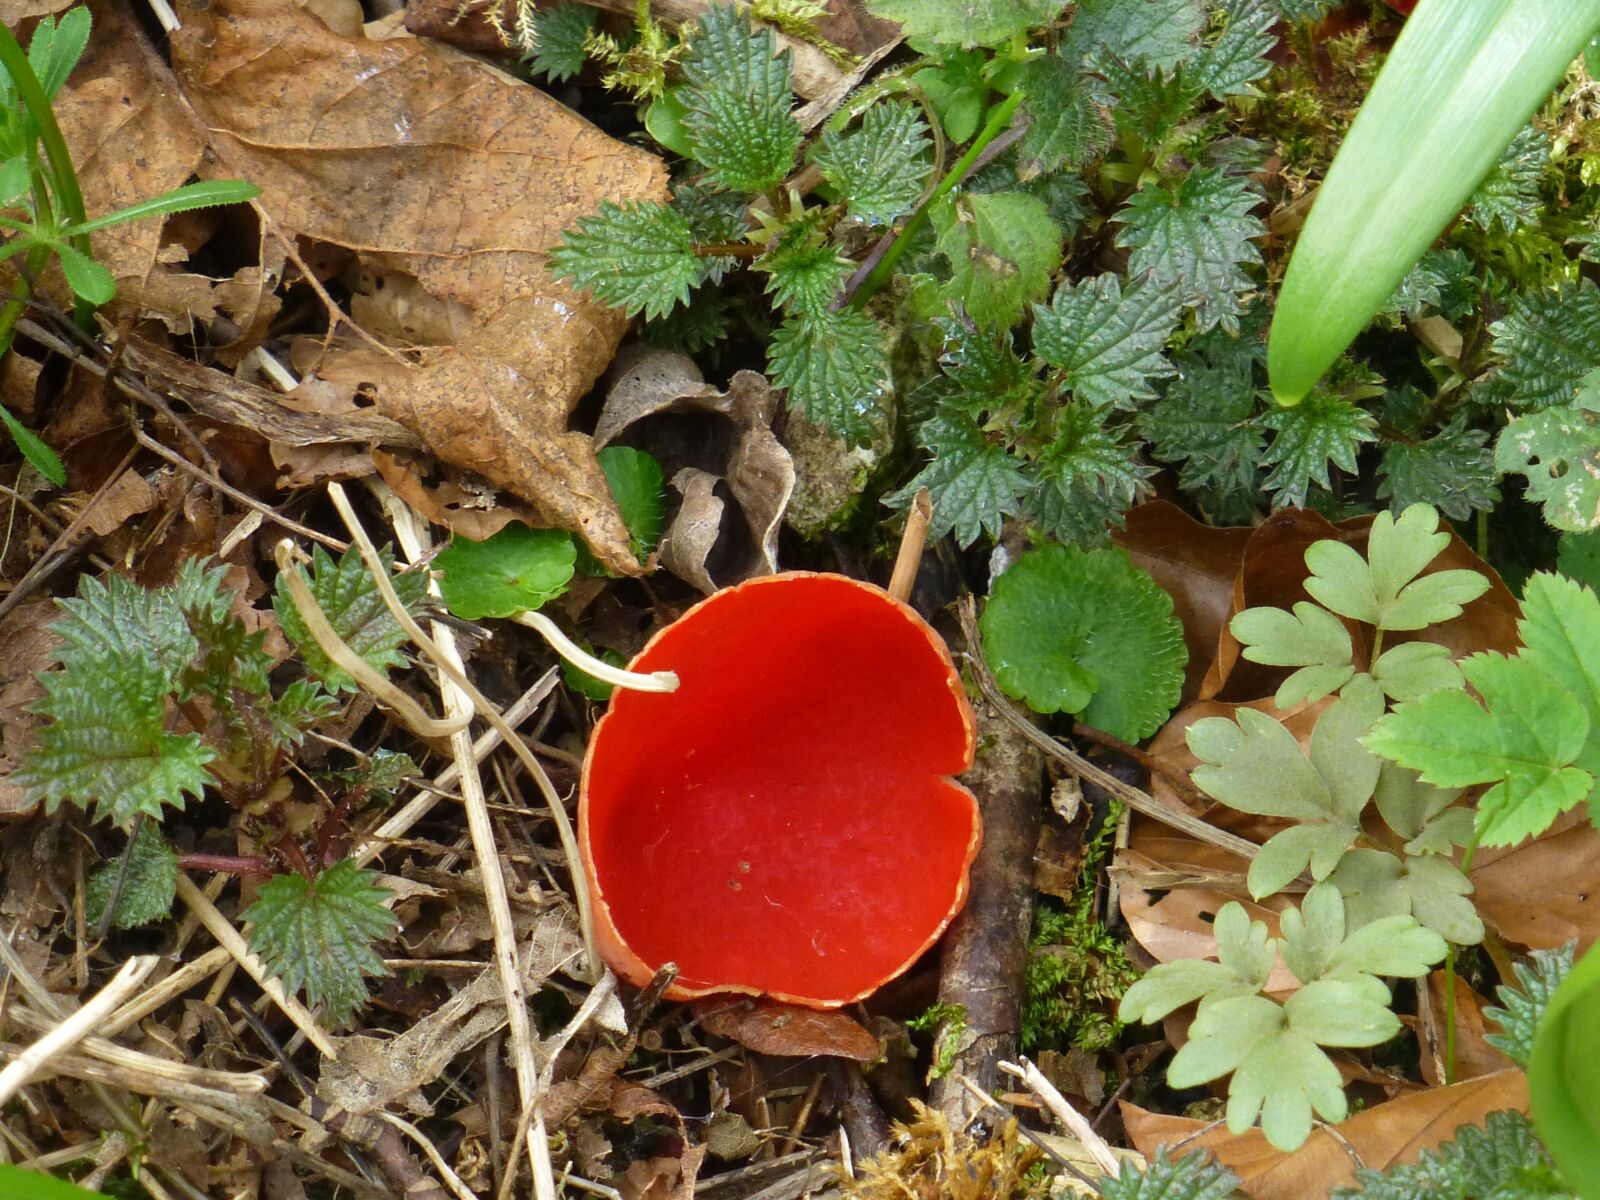 Panasonic DMC-TZ31 sample photo. Mushroom, orange-red becherling, rarely photography